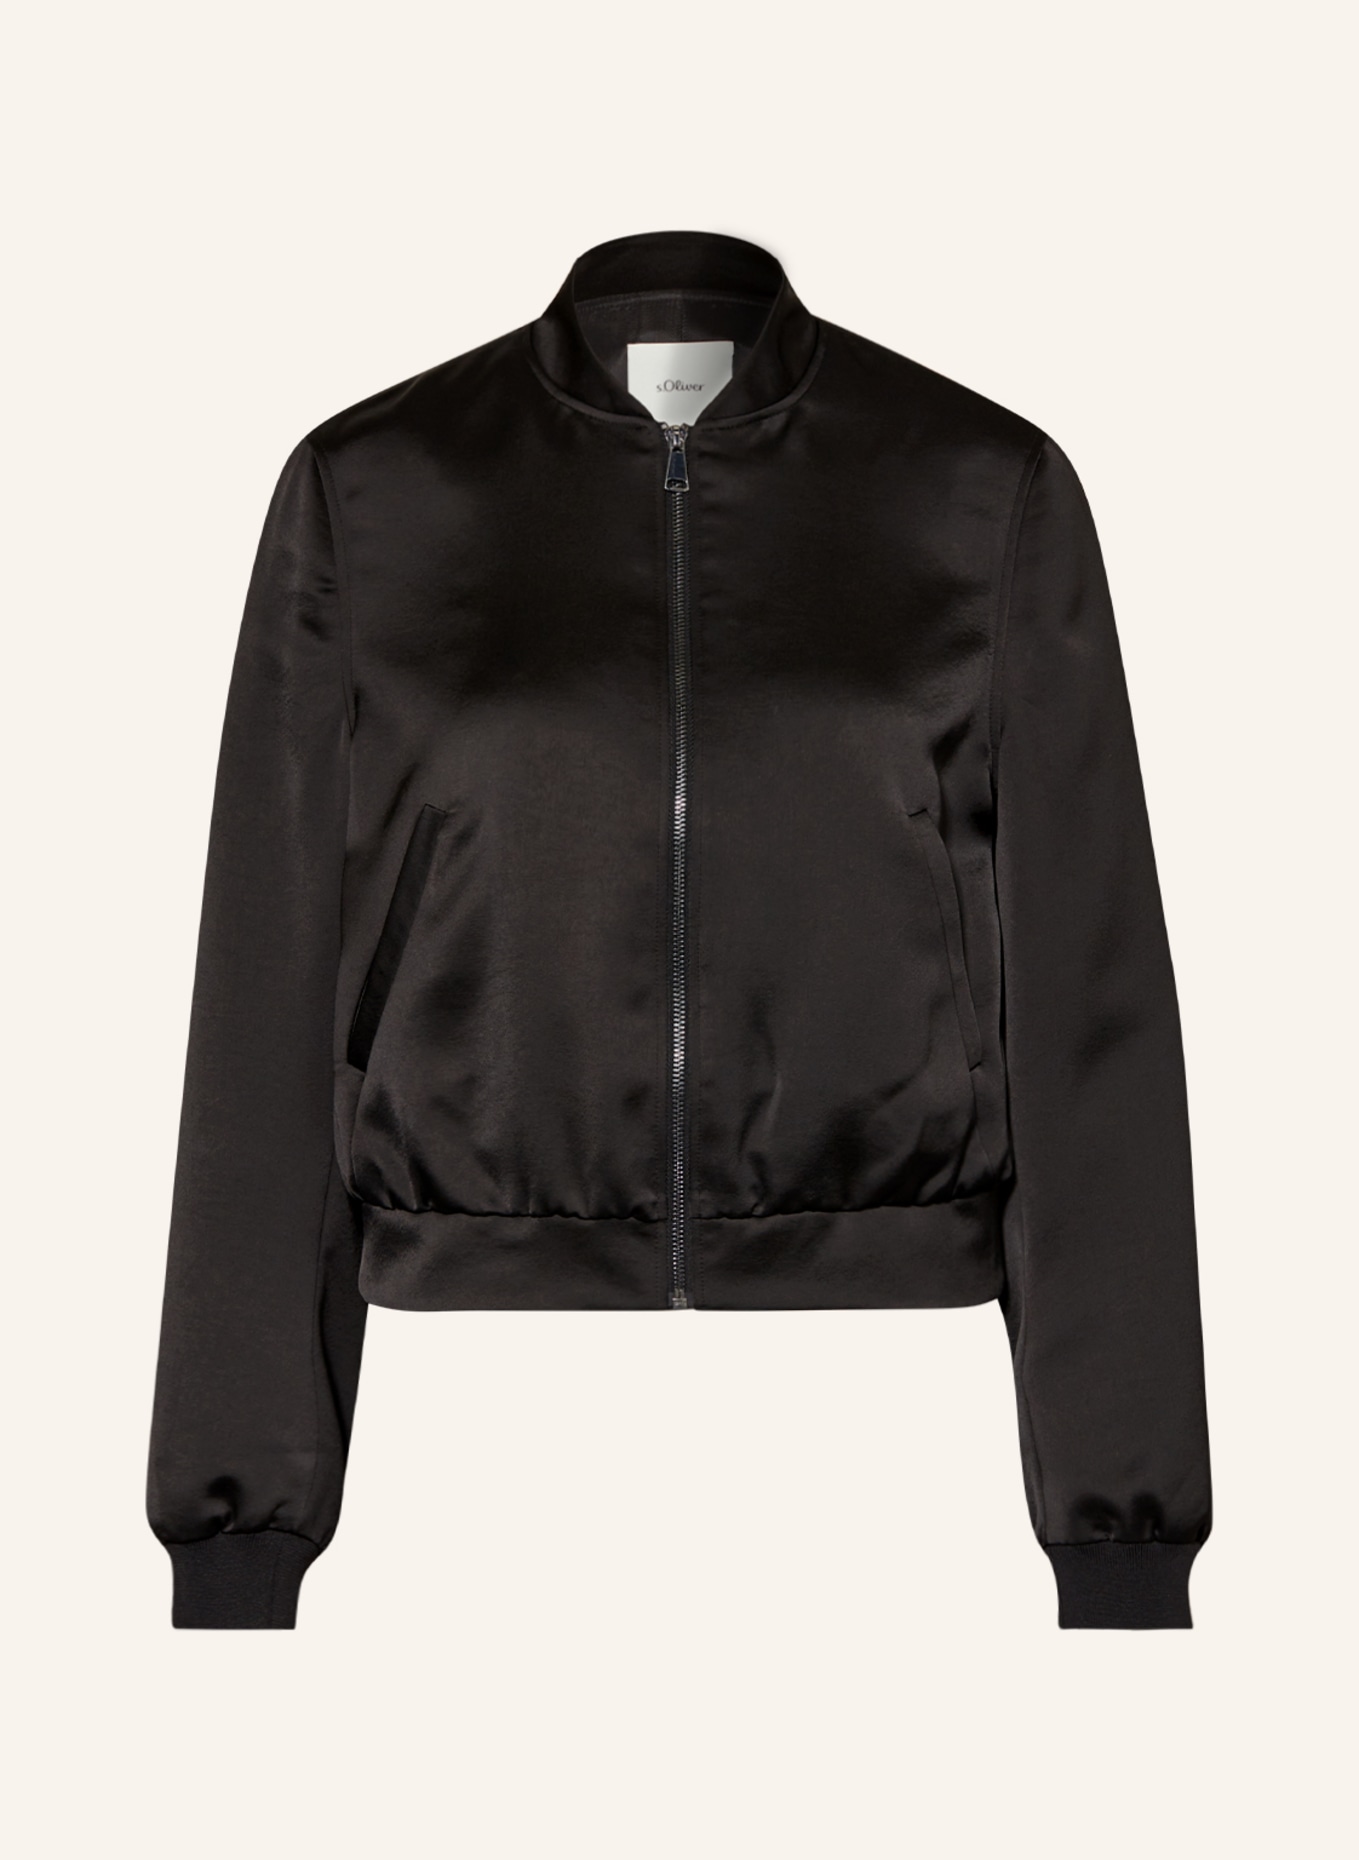 s.Oliver BLACK LABEL Bomber jacket, Color: BLACK (Image 1)